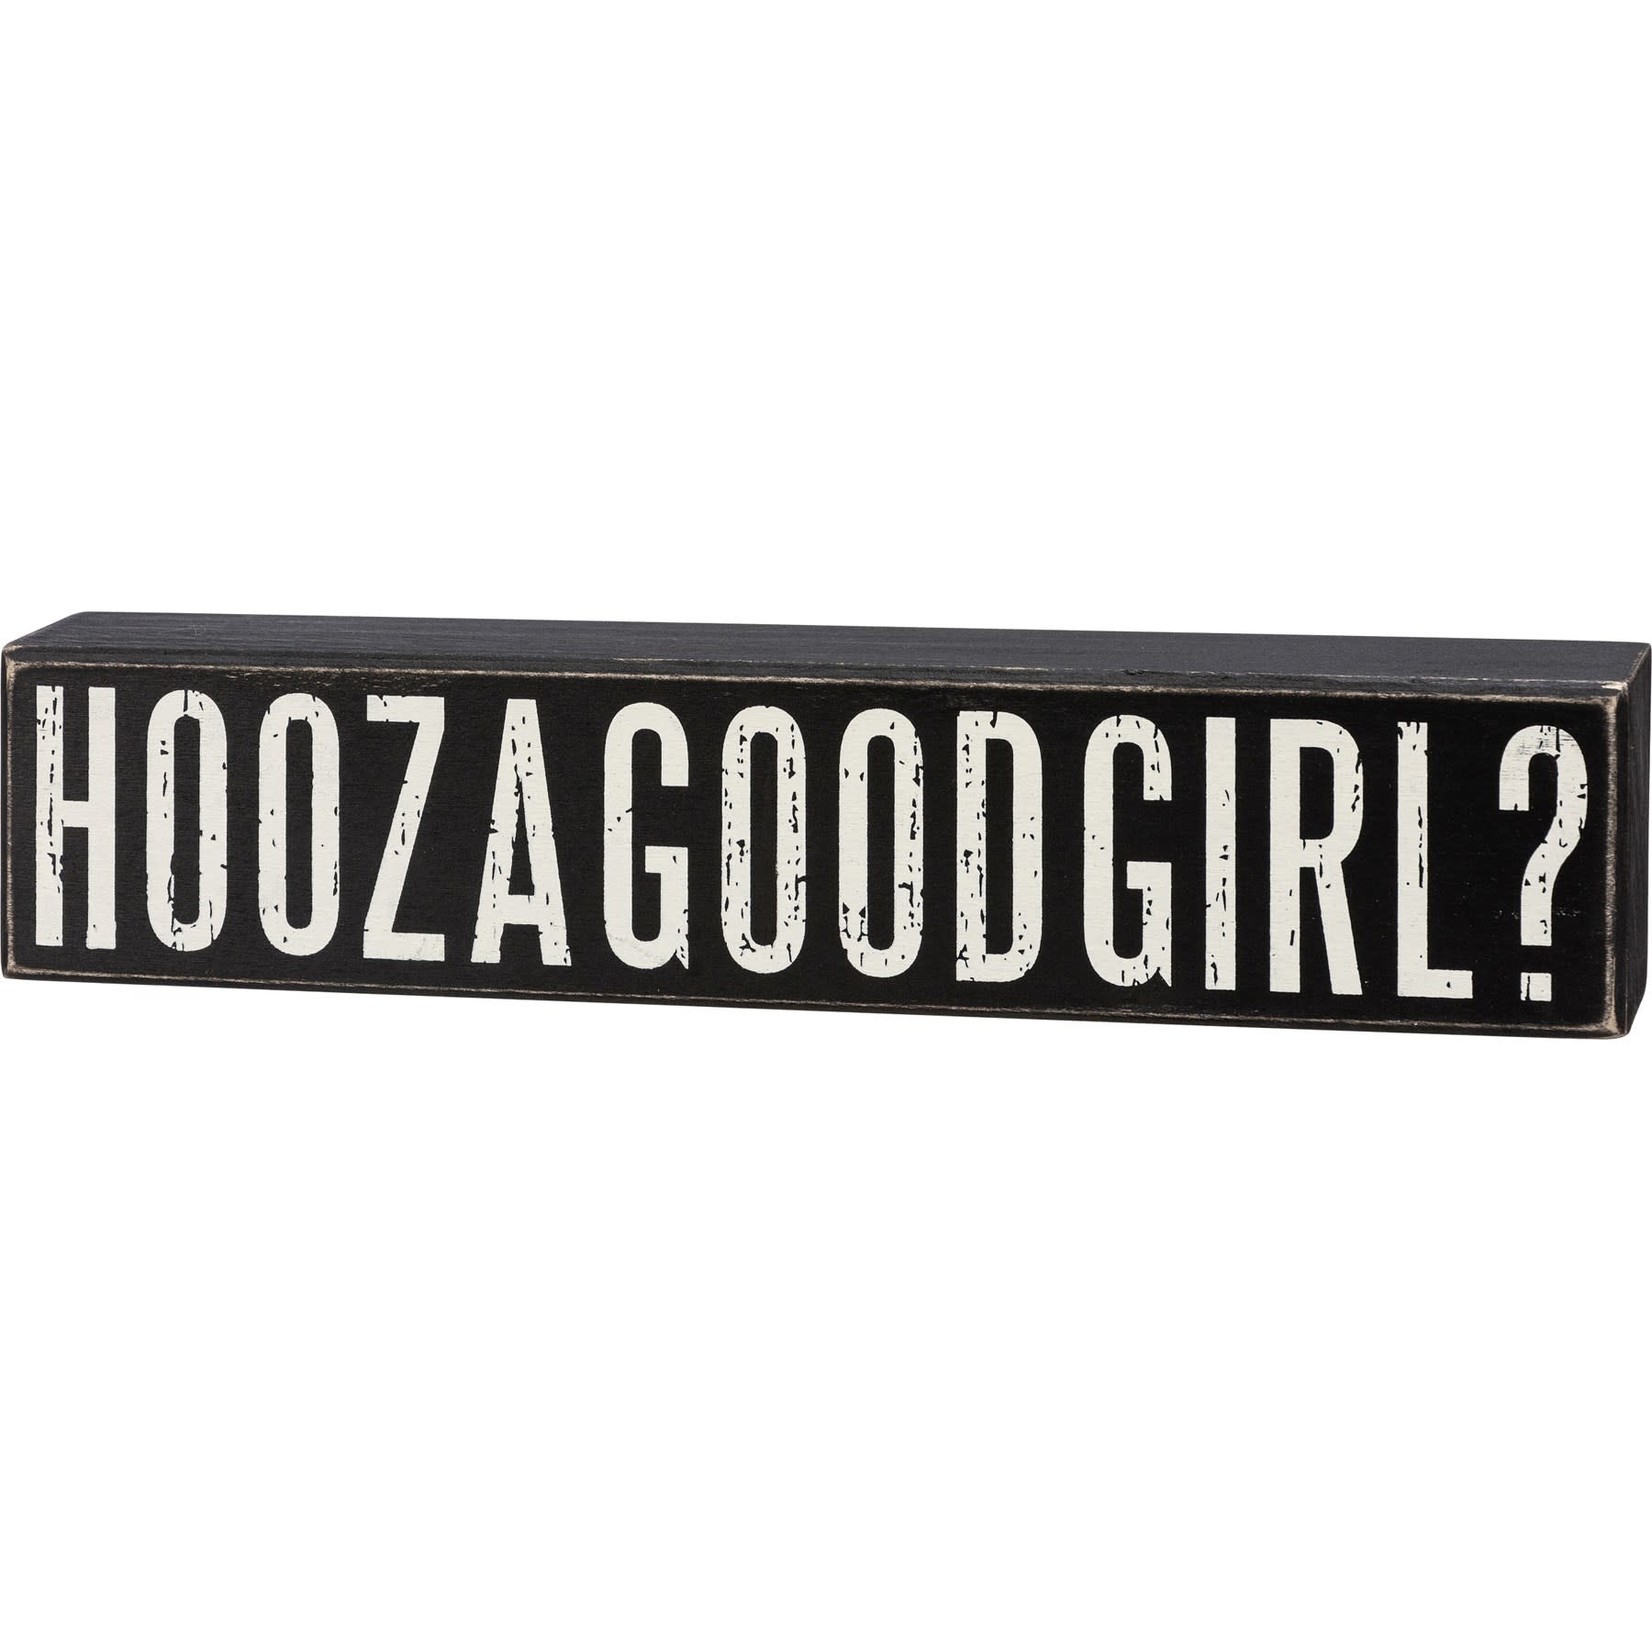 Hoozagoodgirl Sign